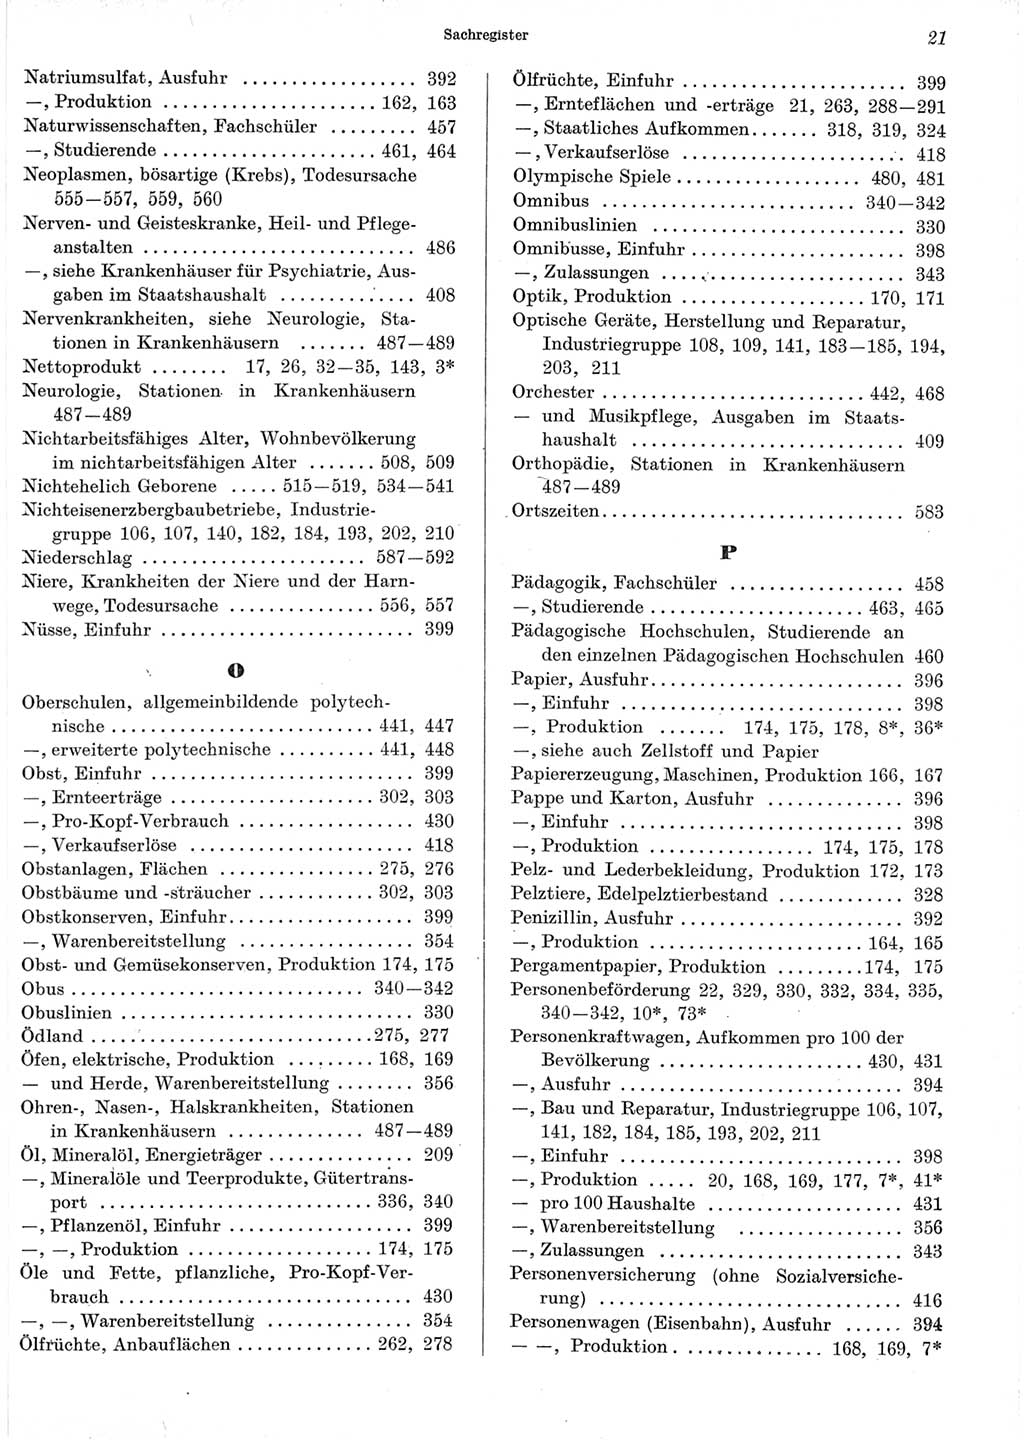 Statistisches Jahrbuch der Deutschen Demokratischen Republik (DDR) 1965, Seite 21 (Stat. Jb. DDR 1965, S. 21)